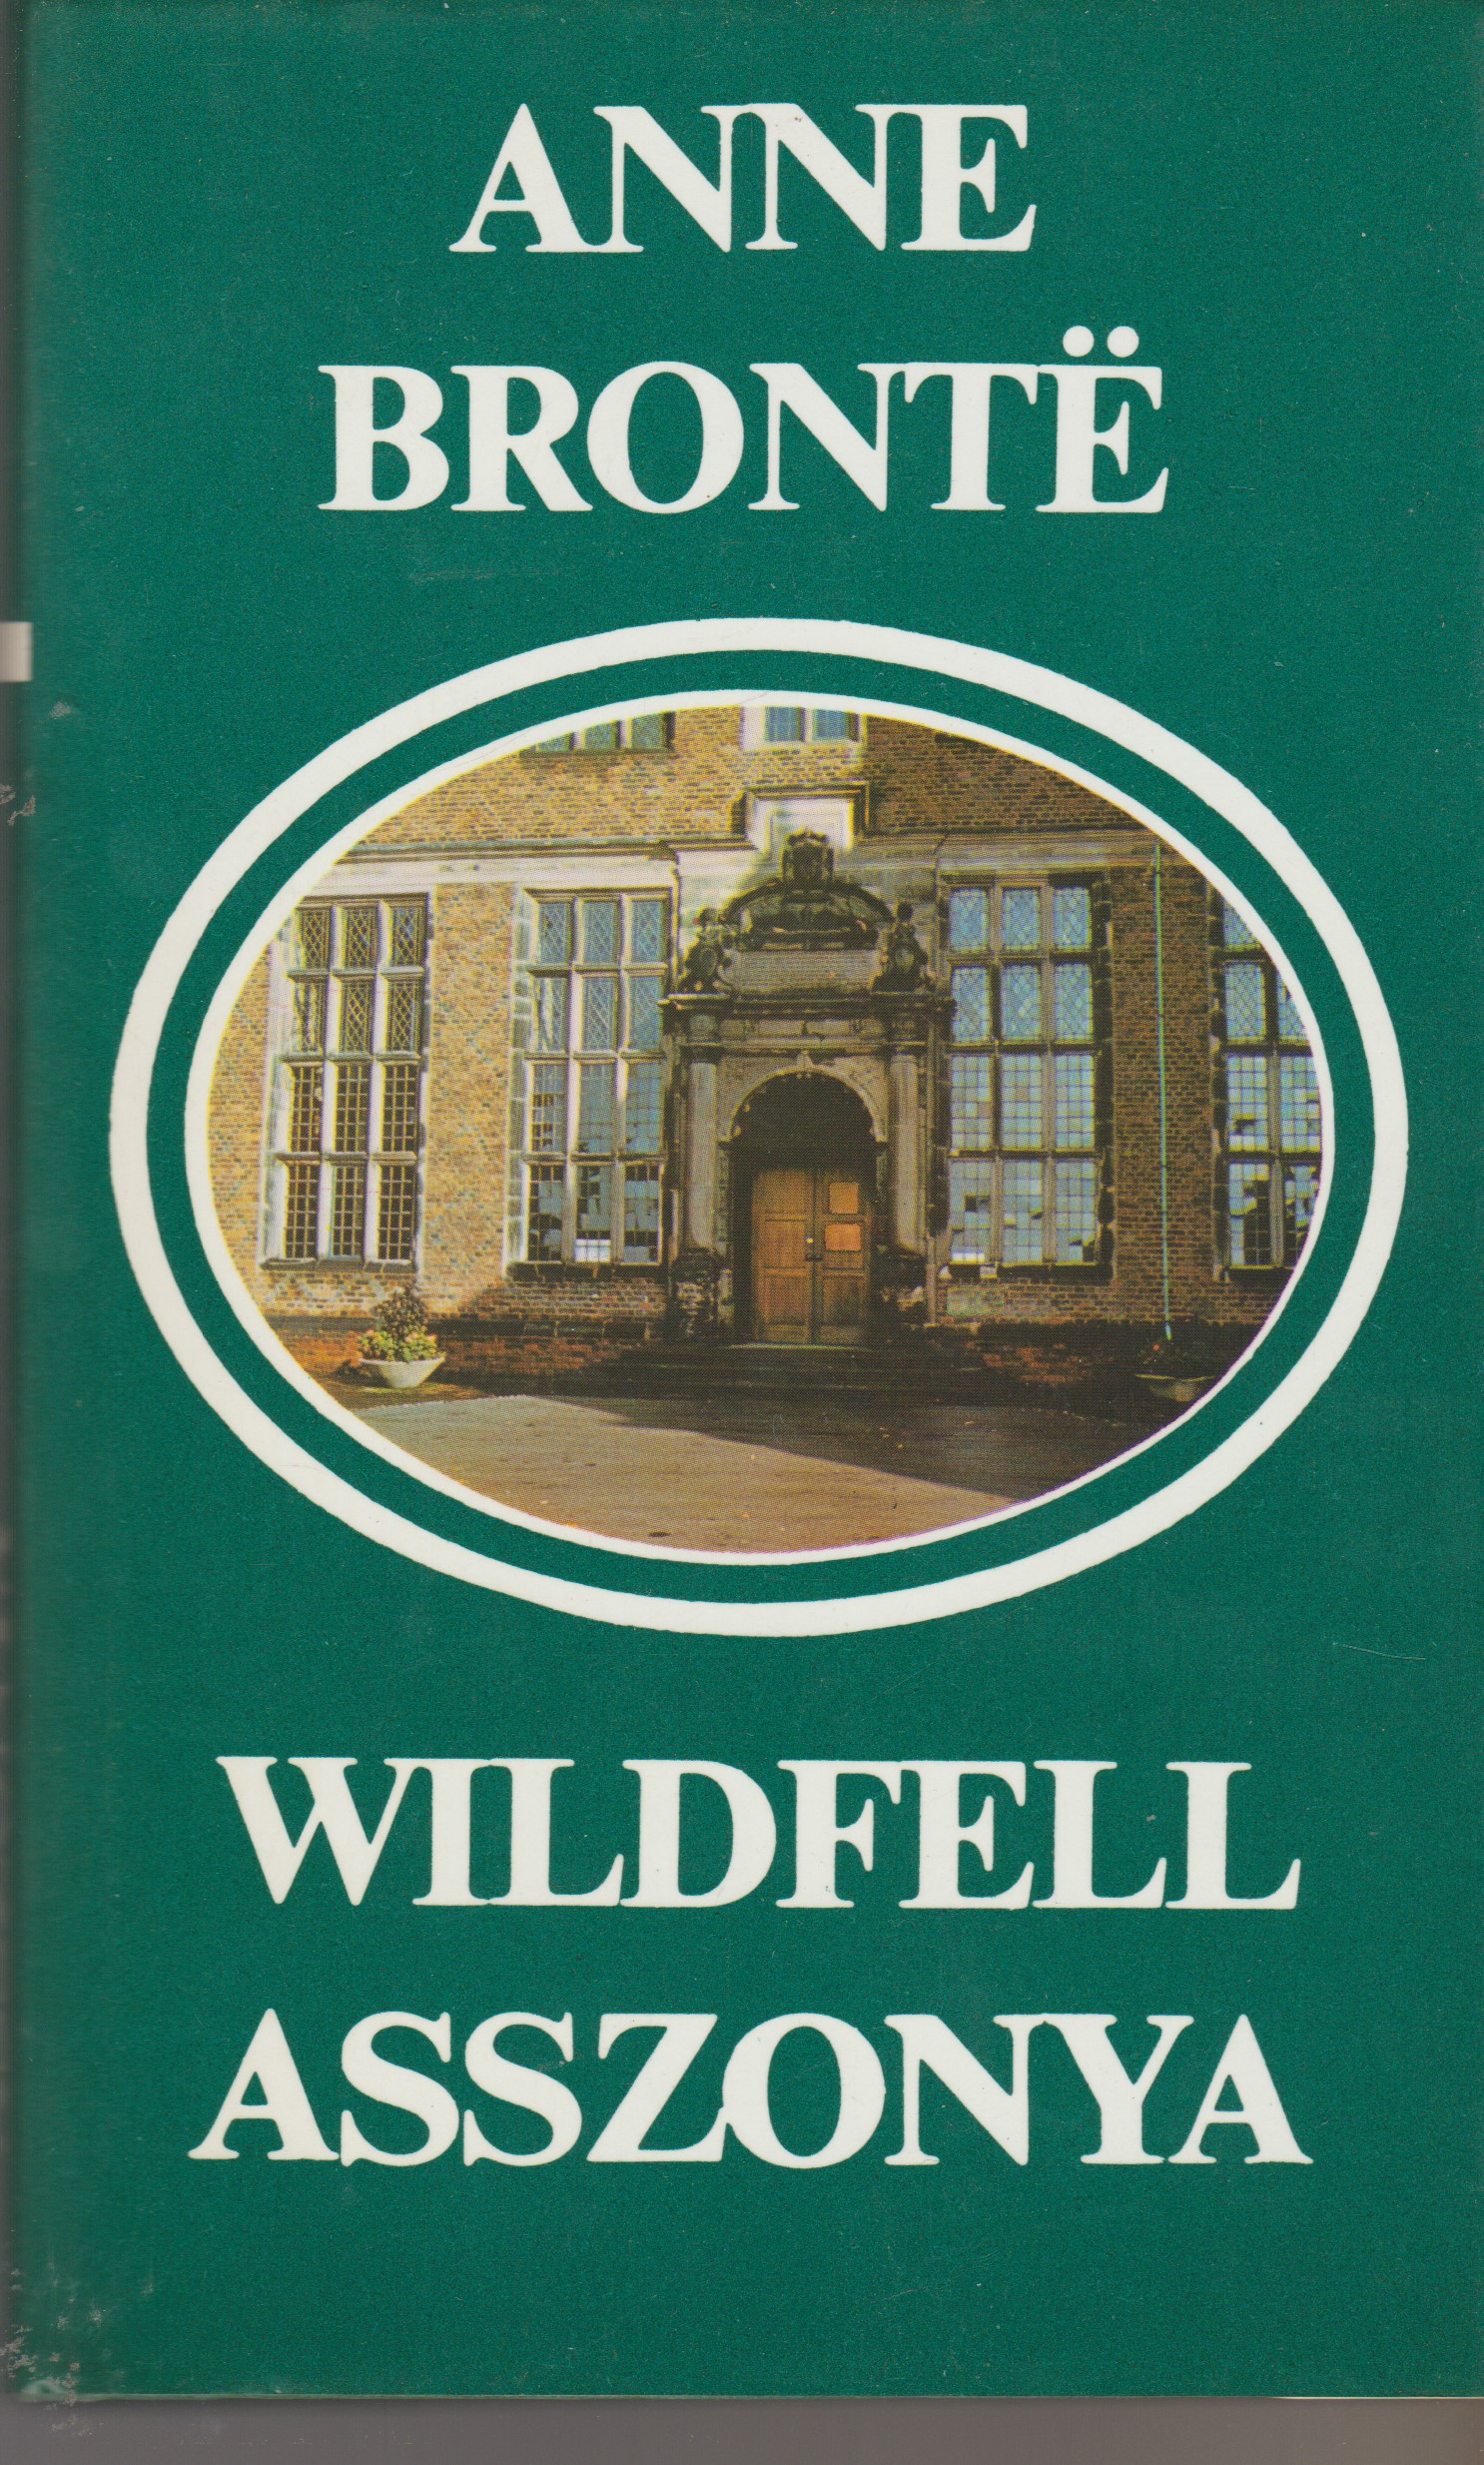 Anne Bronte: Wildfell asszonya